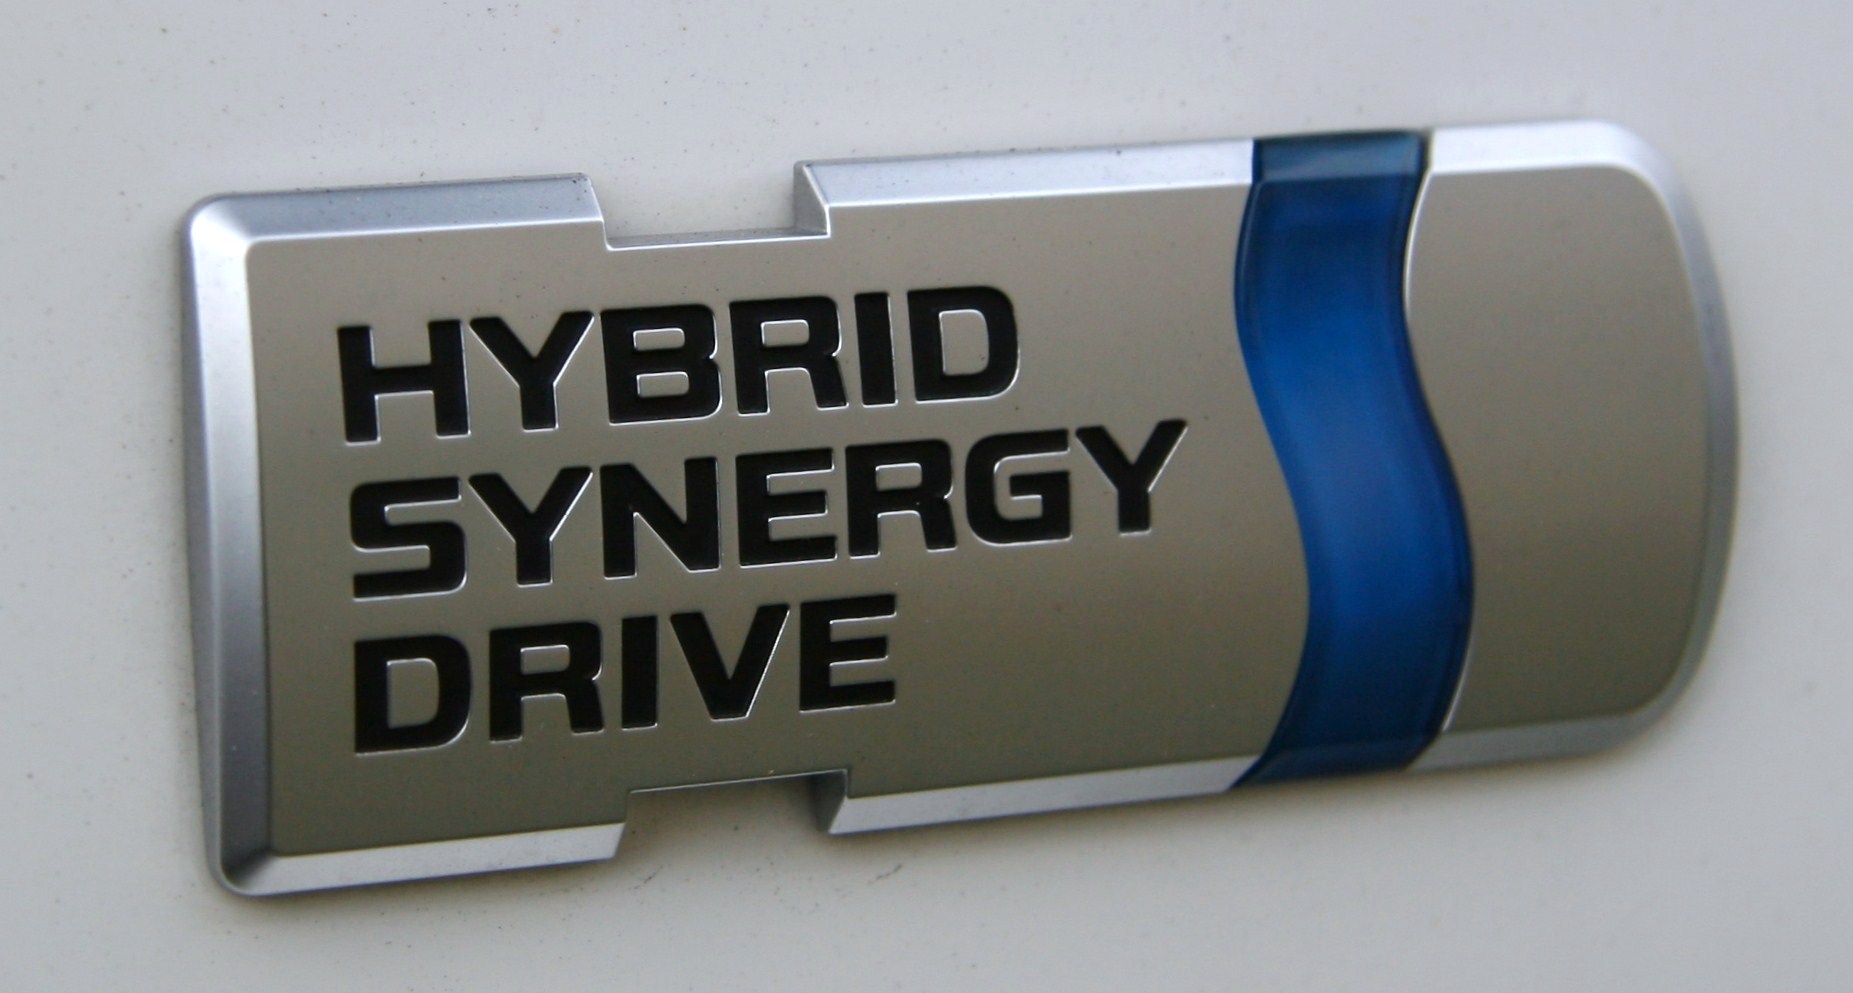 Toyota hybride